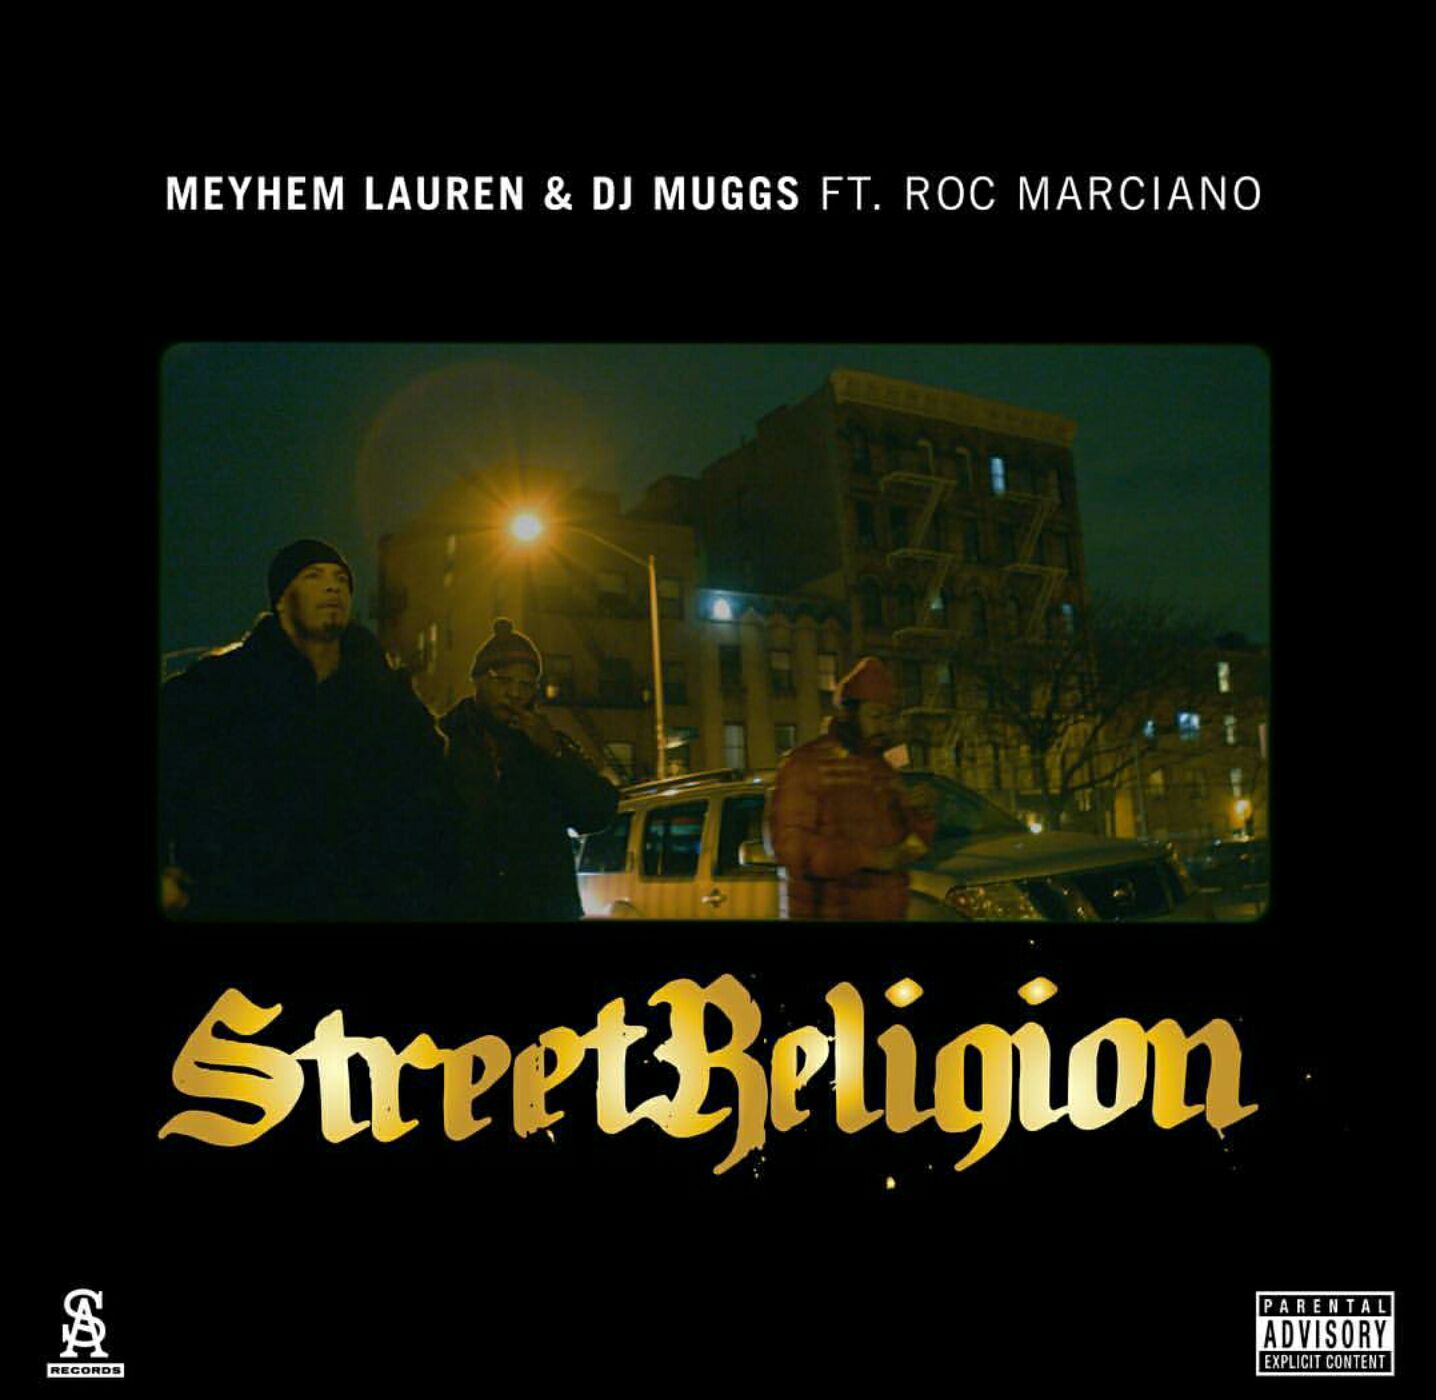 Street_religion